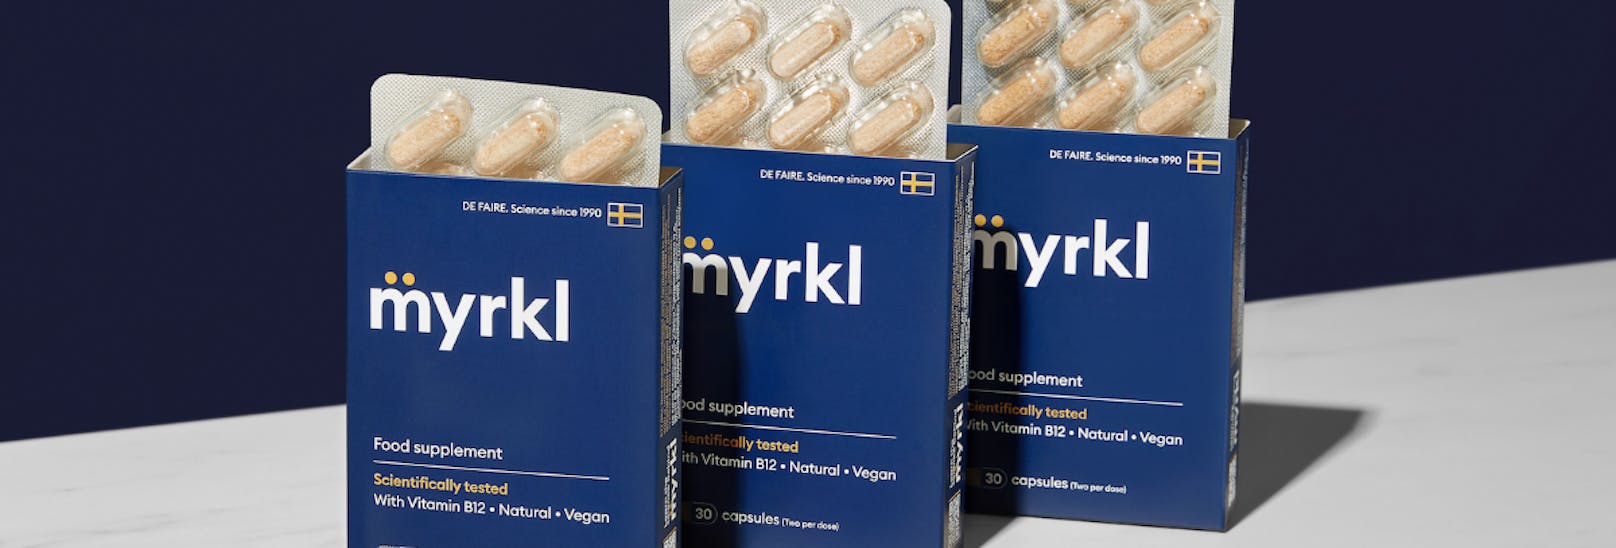 MYRKL ist ab sofort auch in Österreich erhältlich.